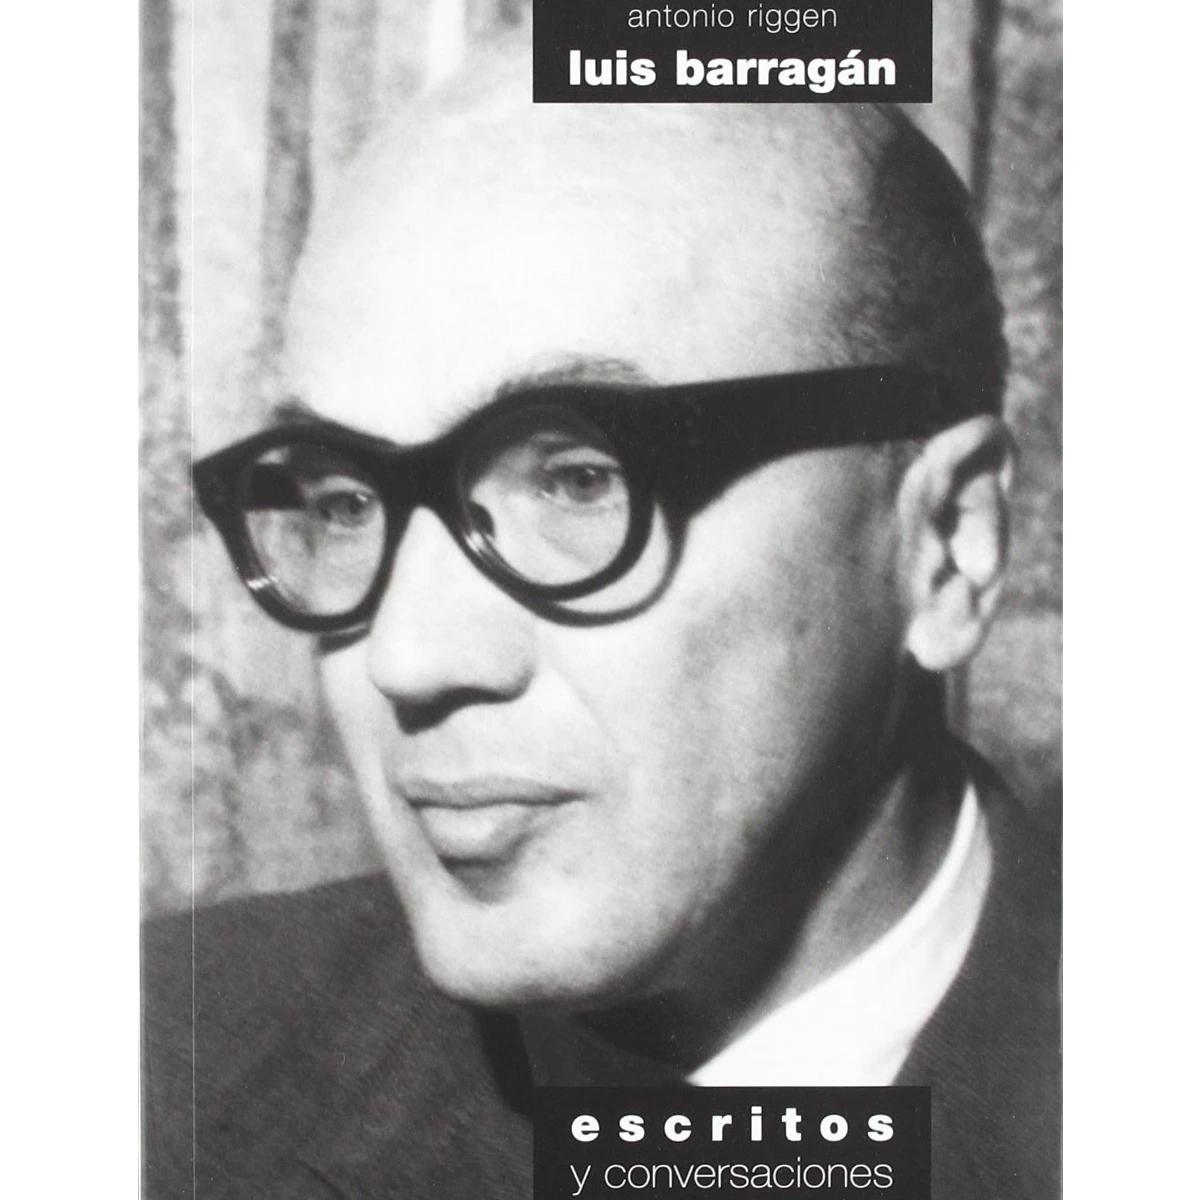 Luis Barragán: escritos y conversaciones